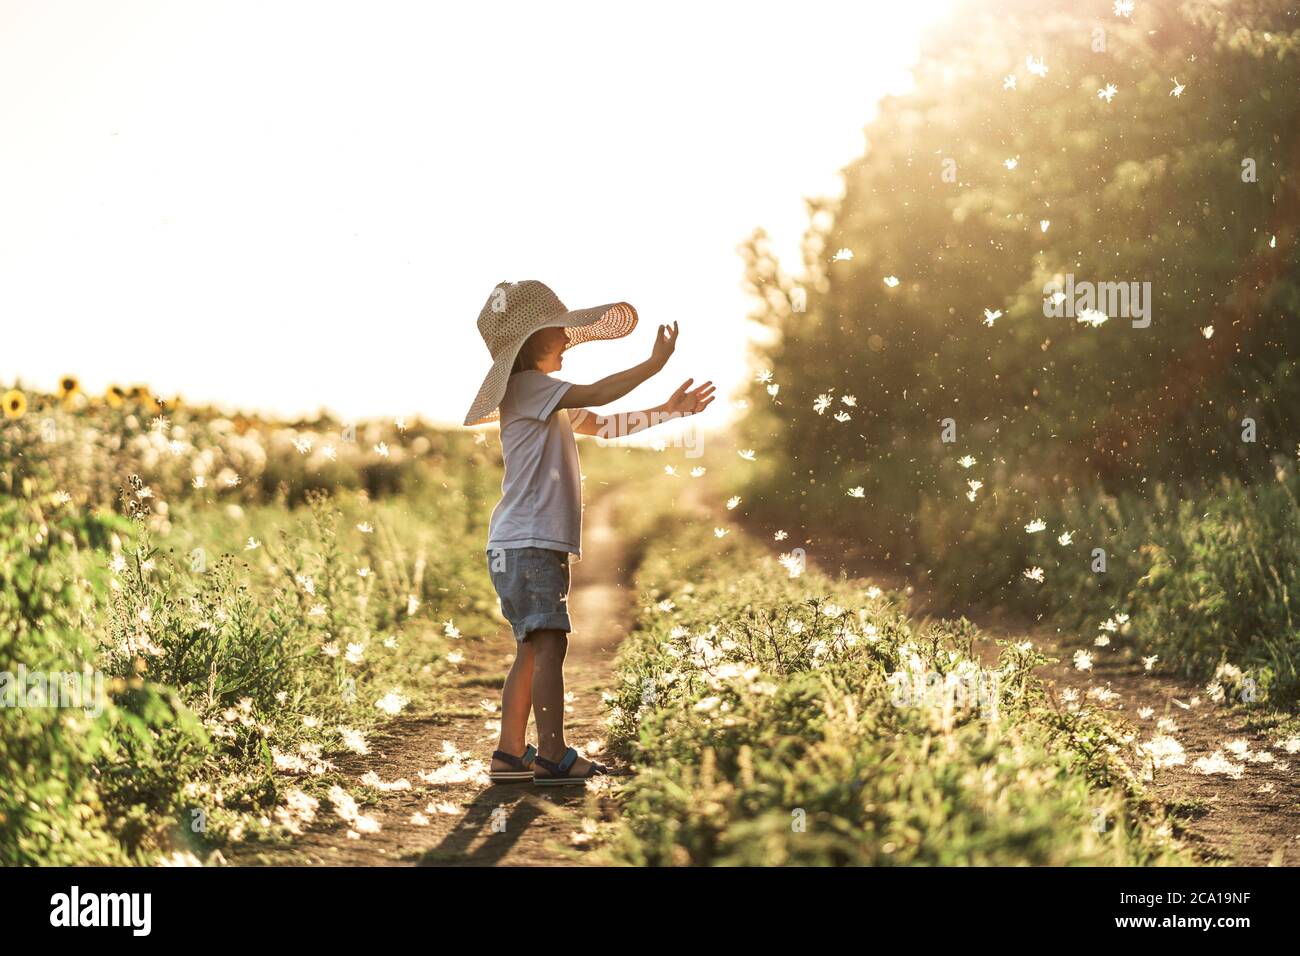 Un ragazzino gioca con i fluffs al tramonto, godendo la vita e la natura. Felice capretto in campagna. Silhouette di un ragazzo nei raggi solari. Aria fresca, concetto di ambiente. Foto Stock